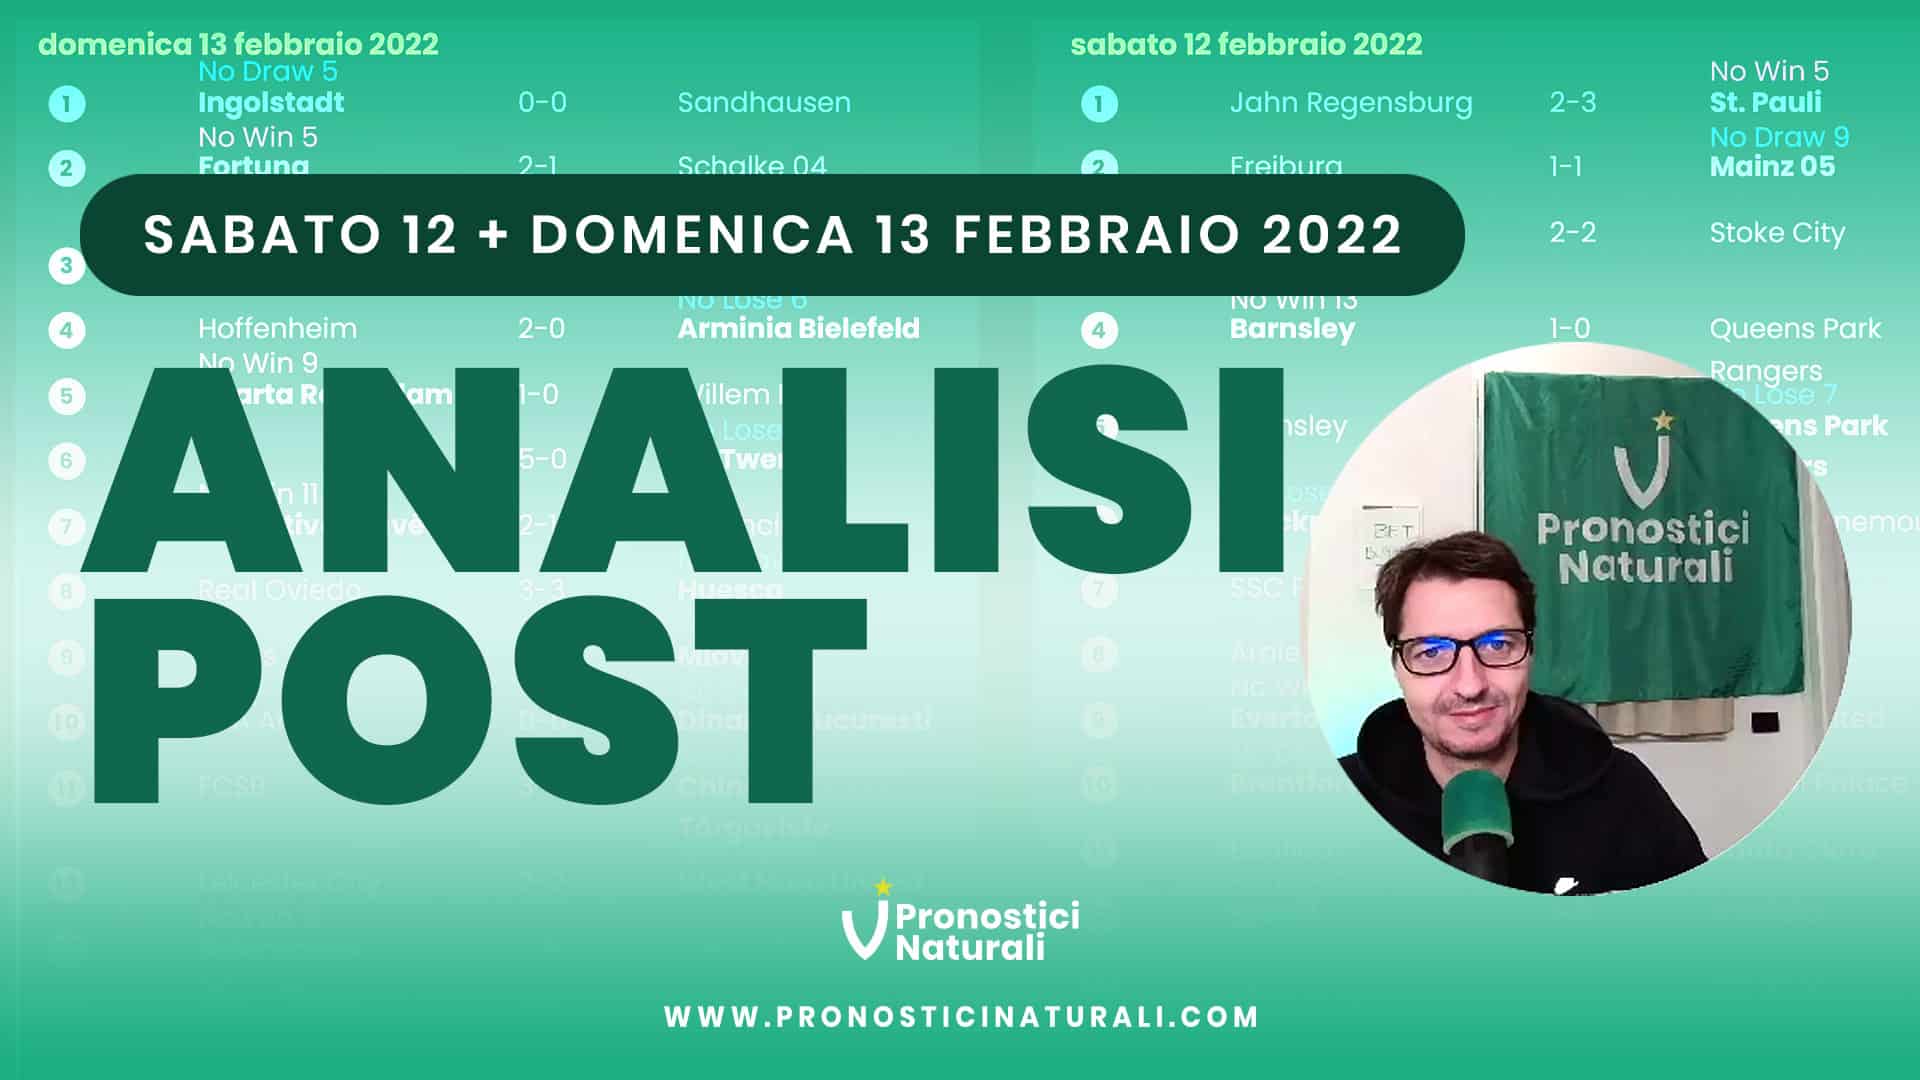 Pronostici Naturali Video Analisi Scommesse Betting Calcio Analisi Post Partite Sabato 12 Domenica 13 Febbraio 2022